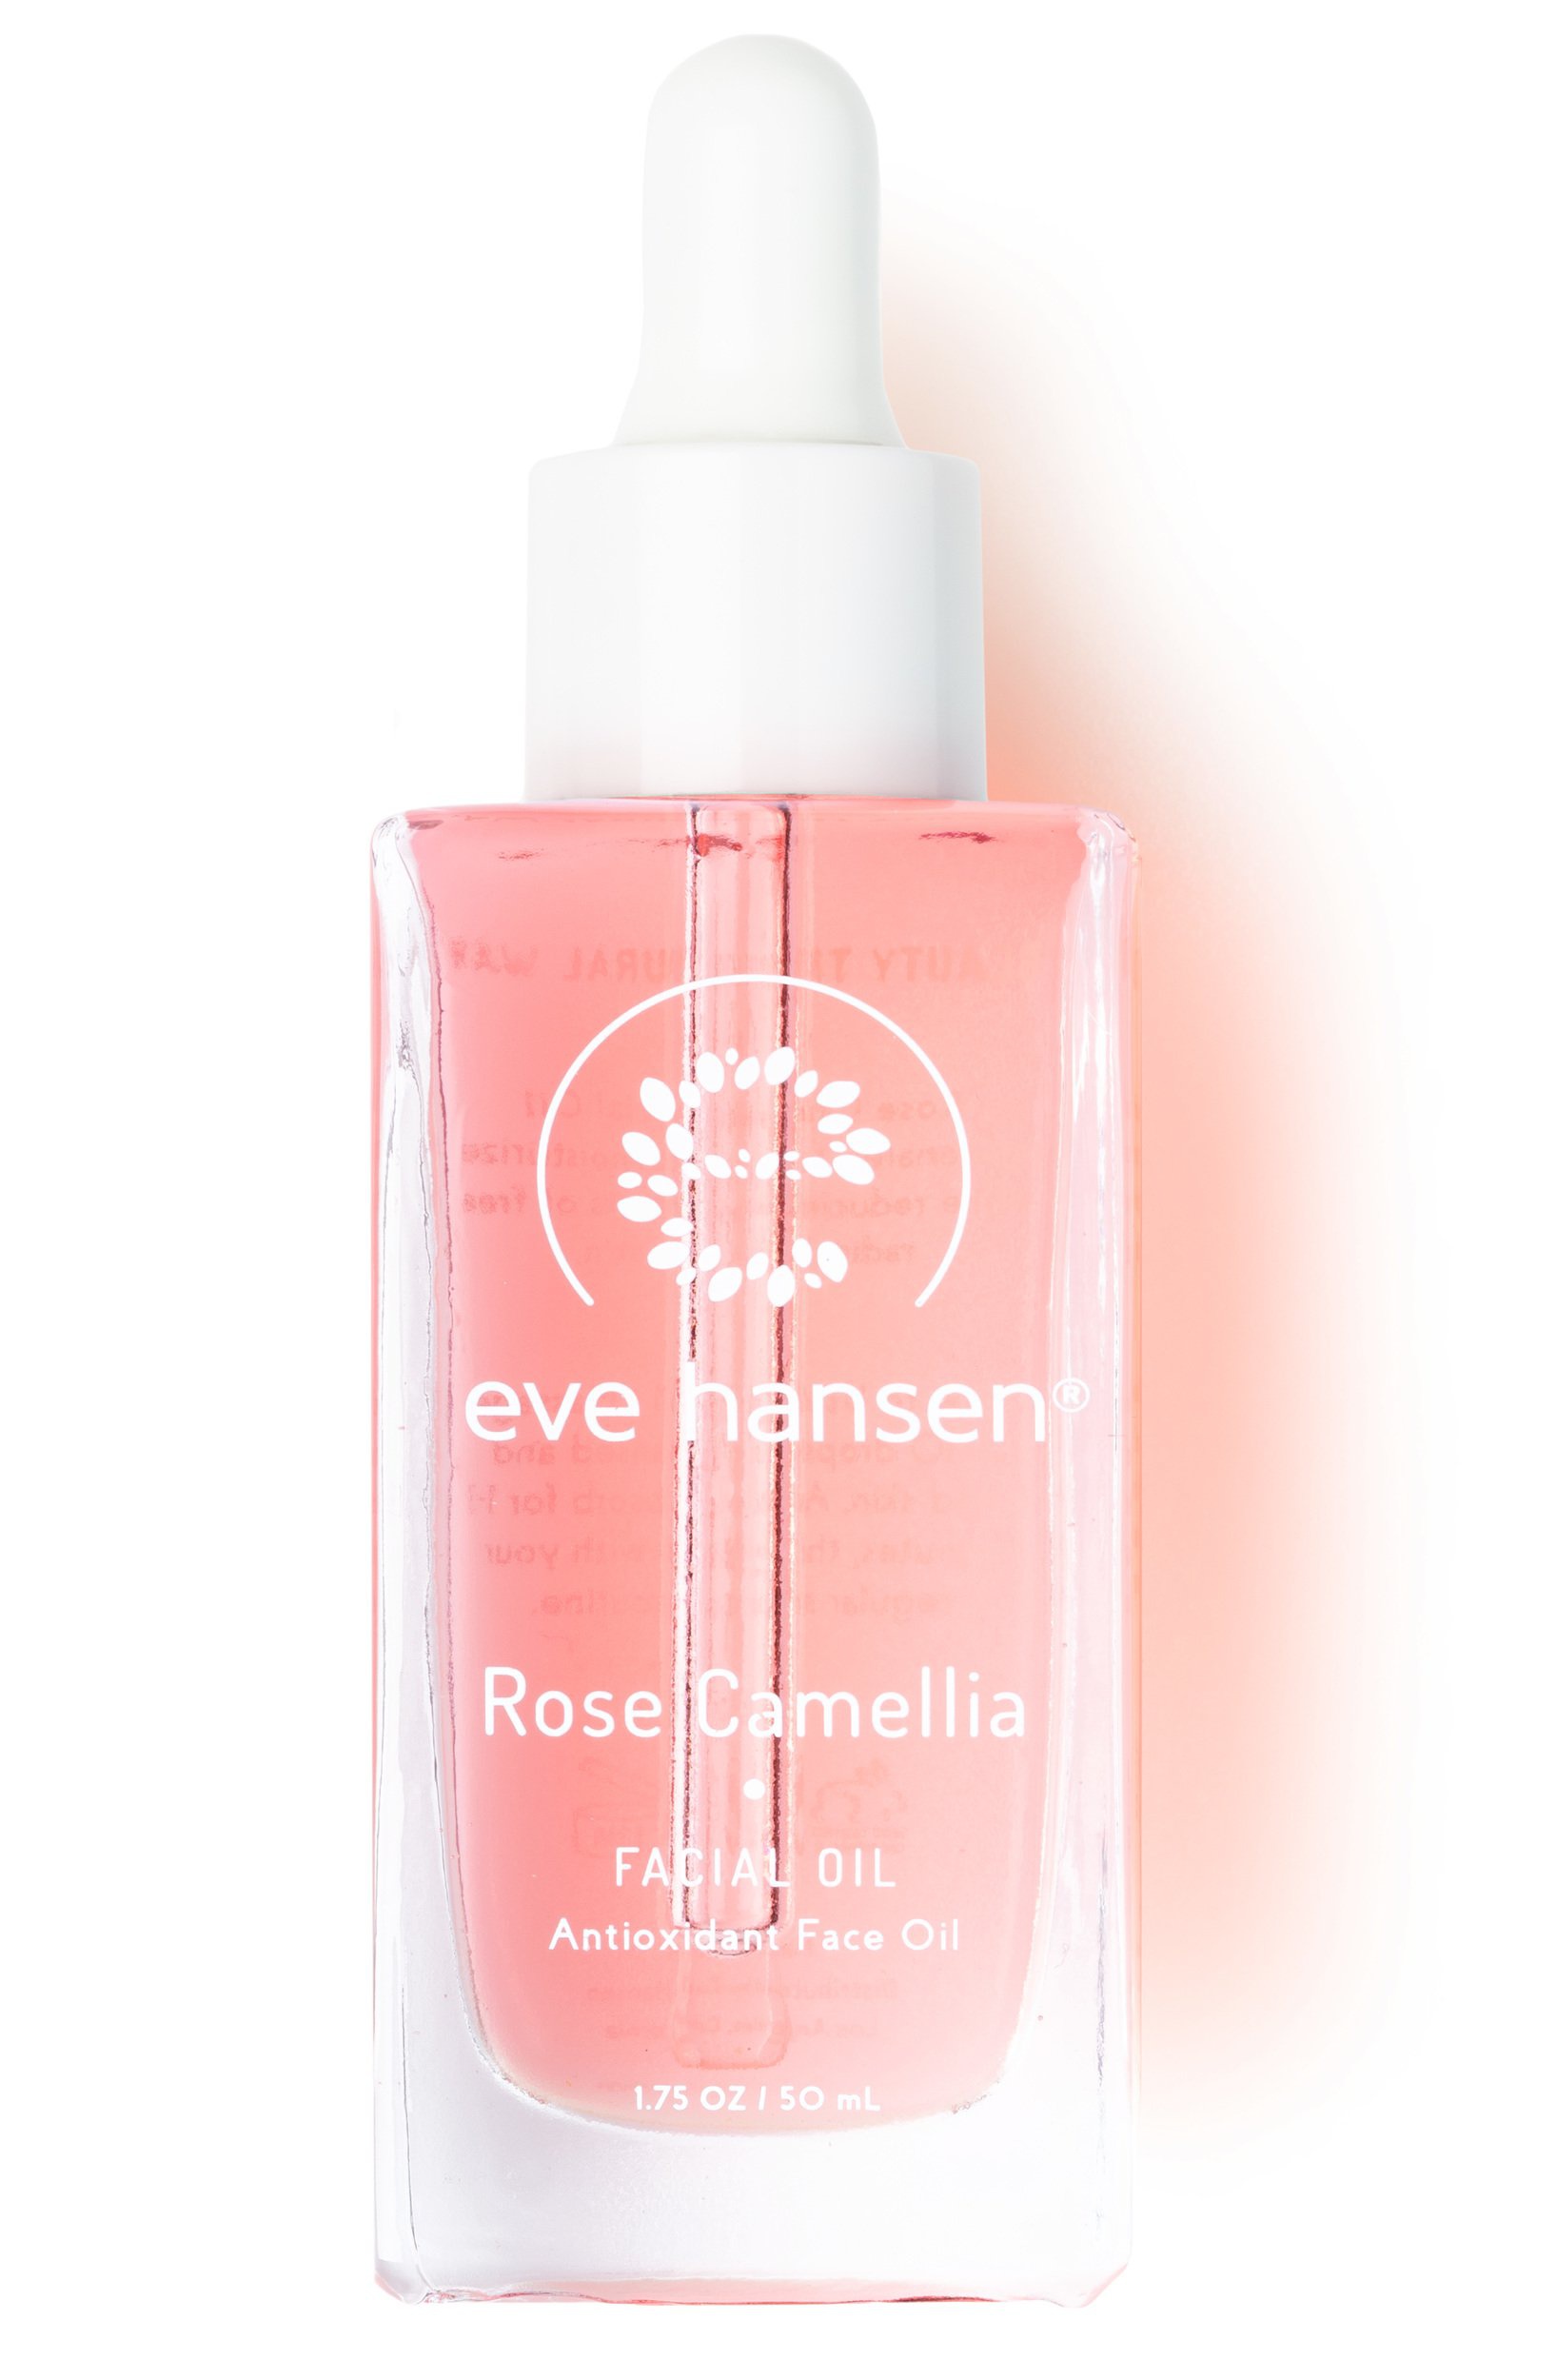 Eve Hansen Rose Camellia Facial Oil